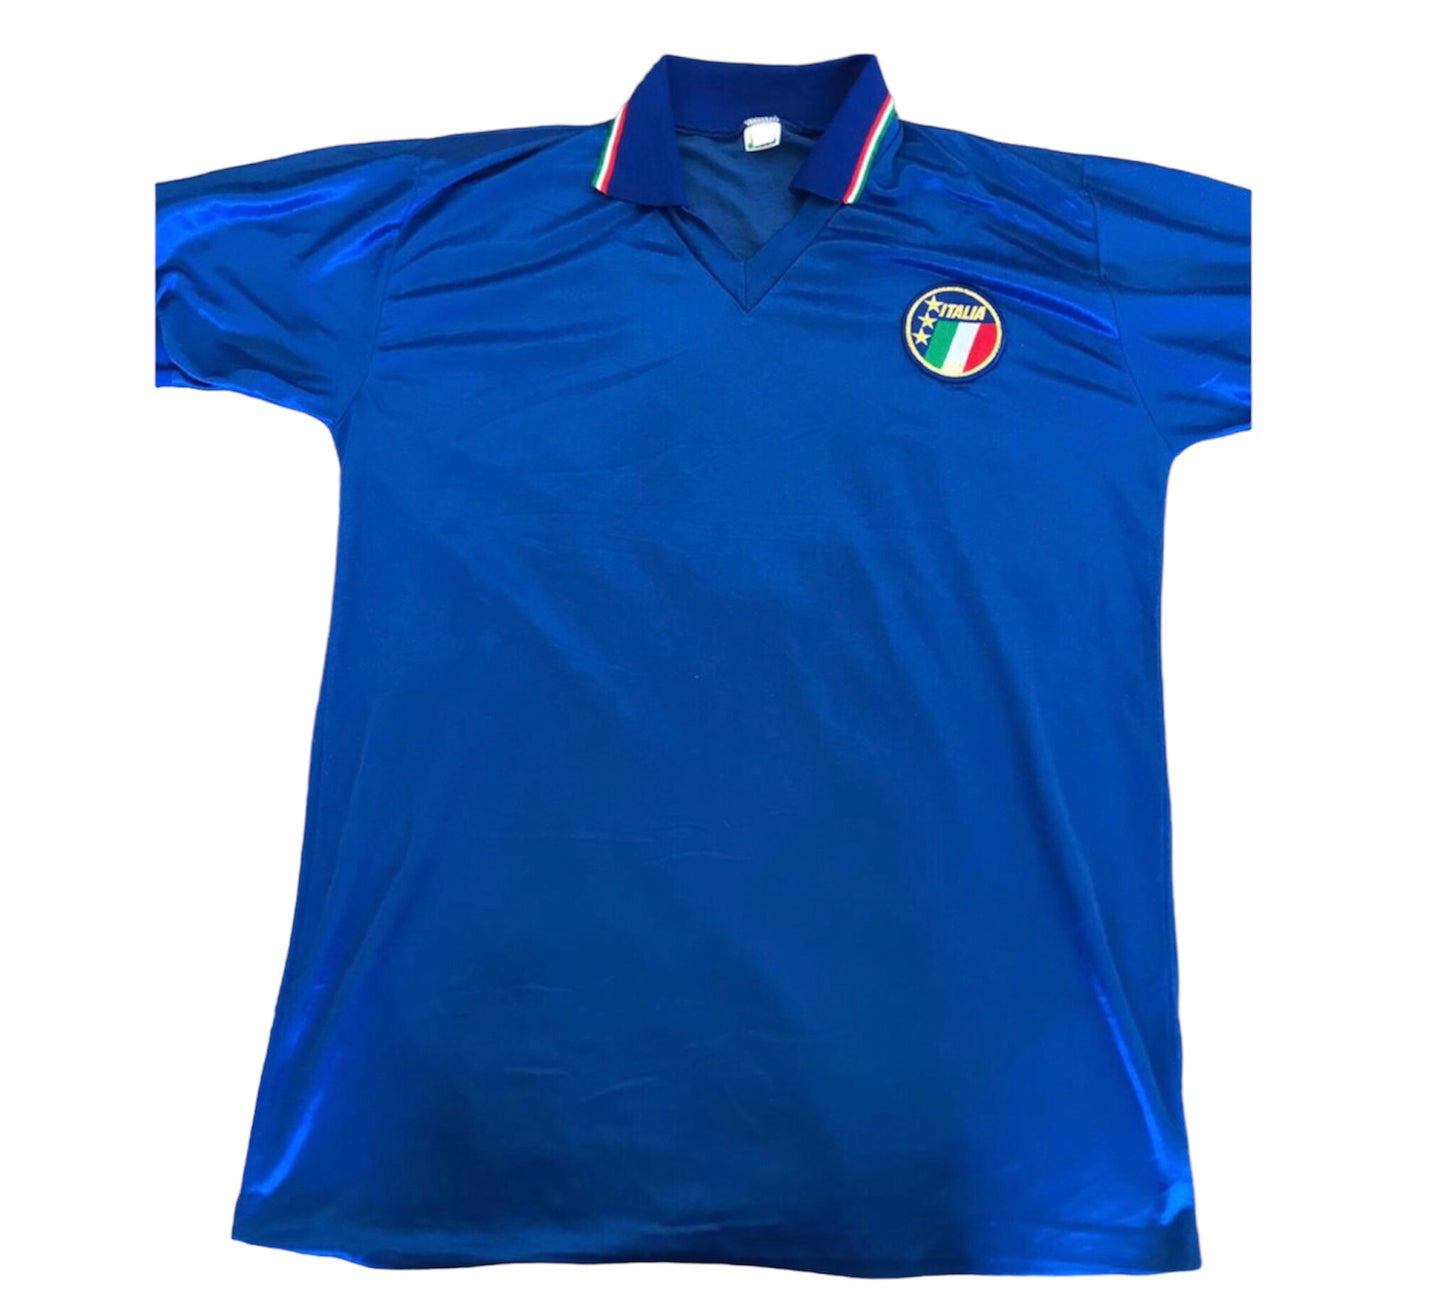 Diadorra Italy 1986 World cup soccer jersey